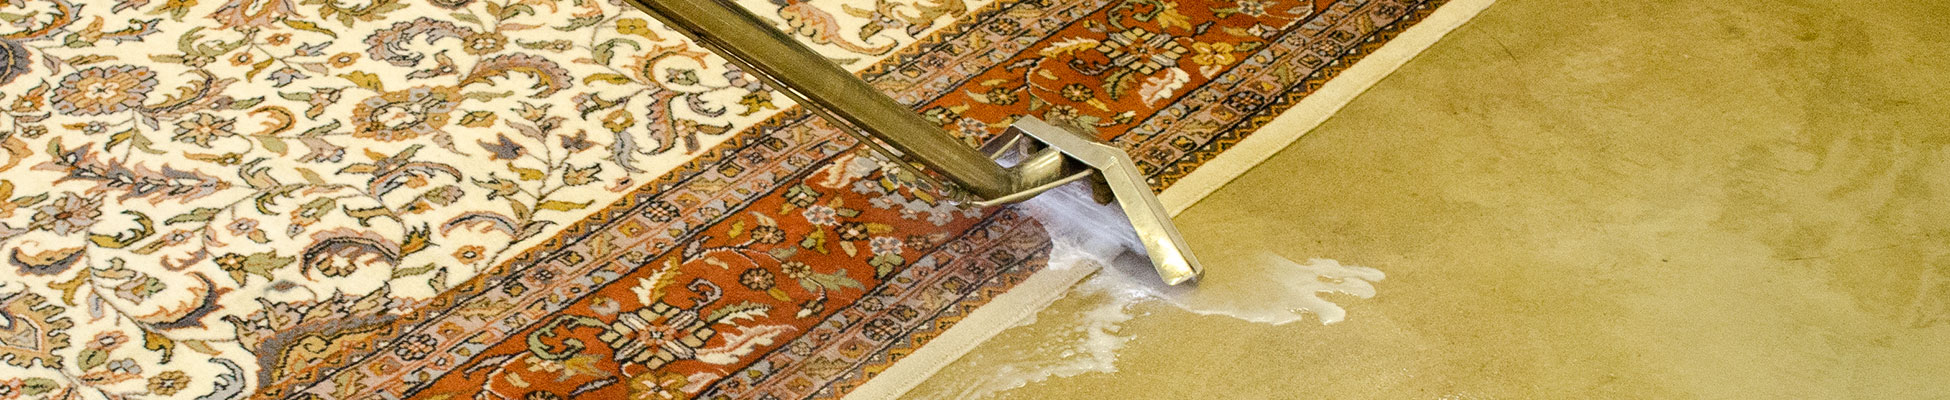 Carpet cleaner being used on Oriental rug